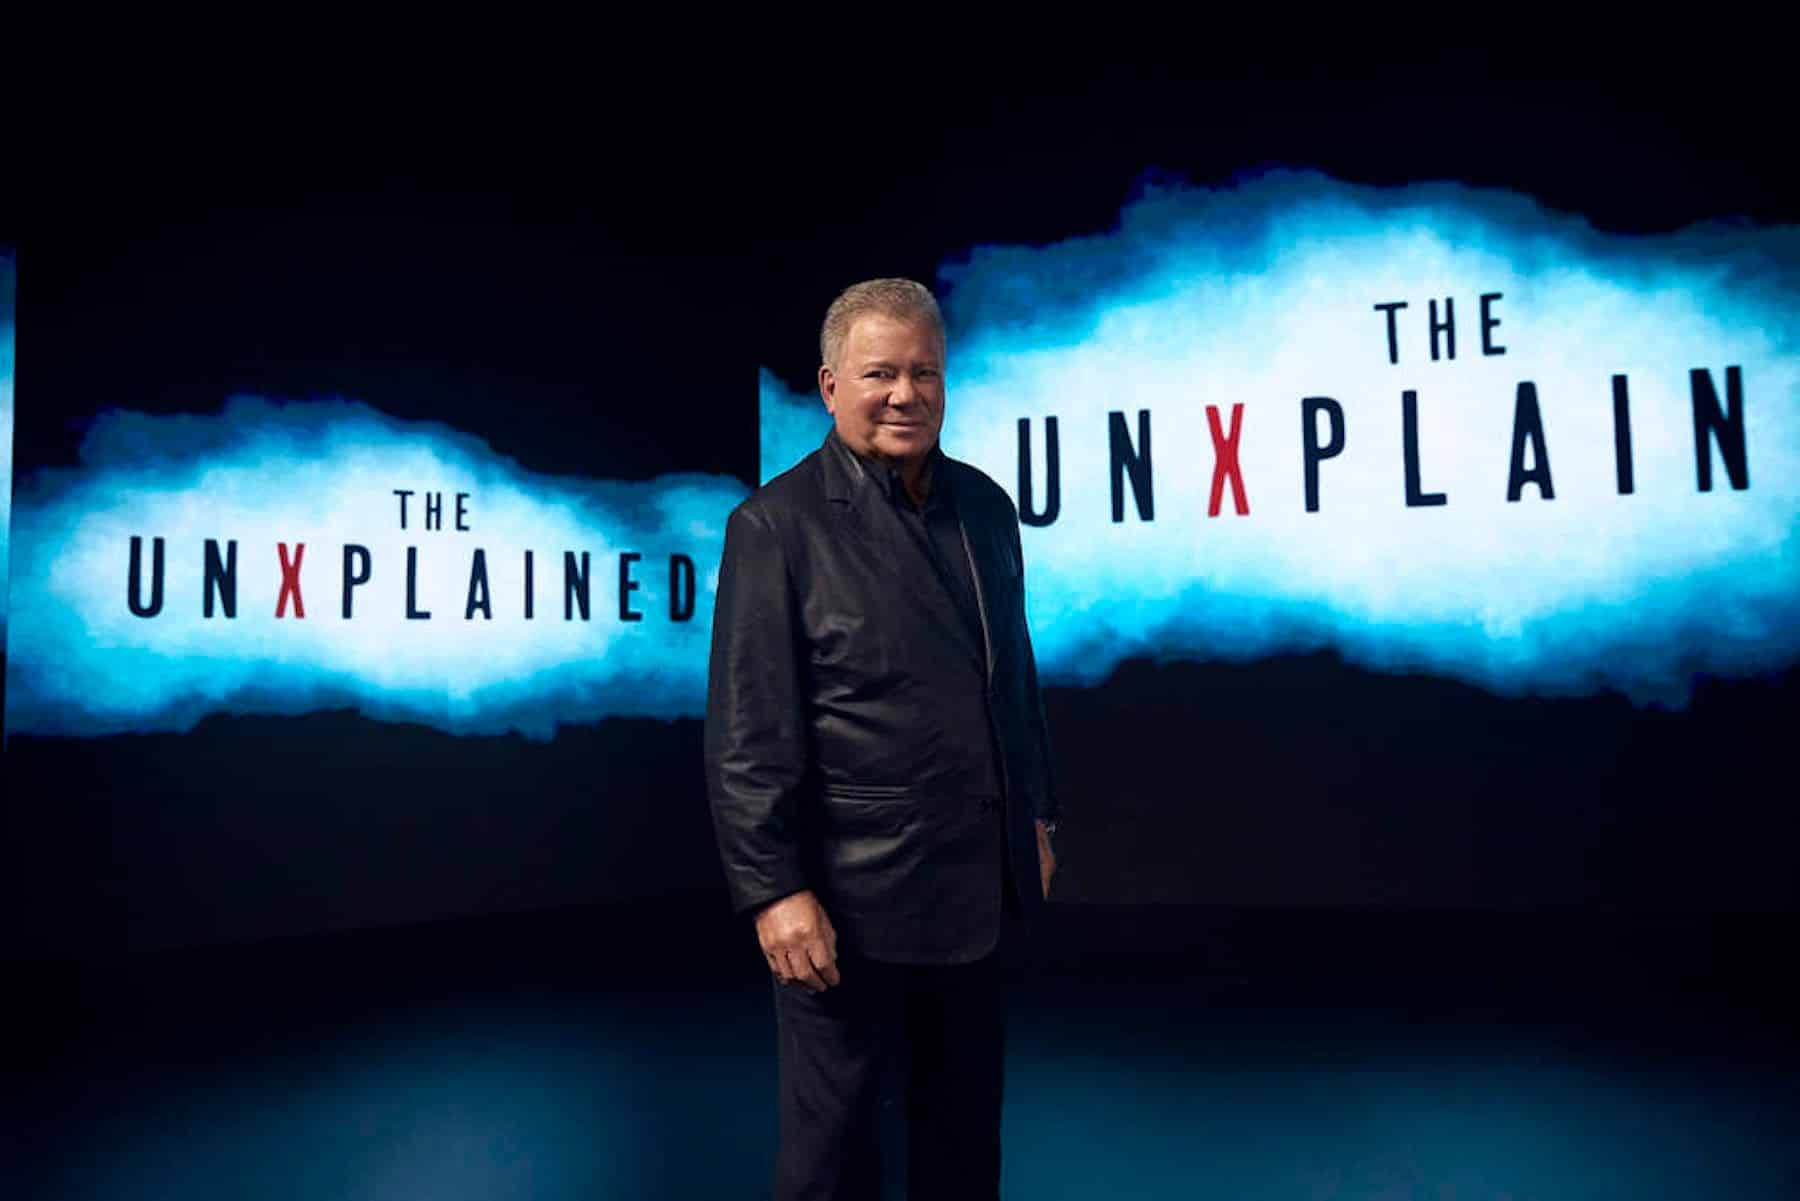 THE UNXPLAINED, (aka THE UNEXPLAINED), host William Shatner